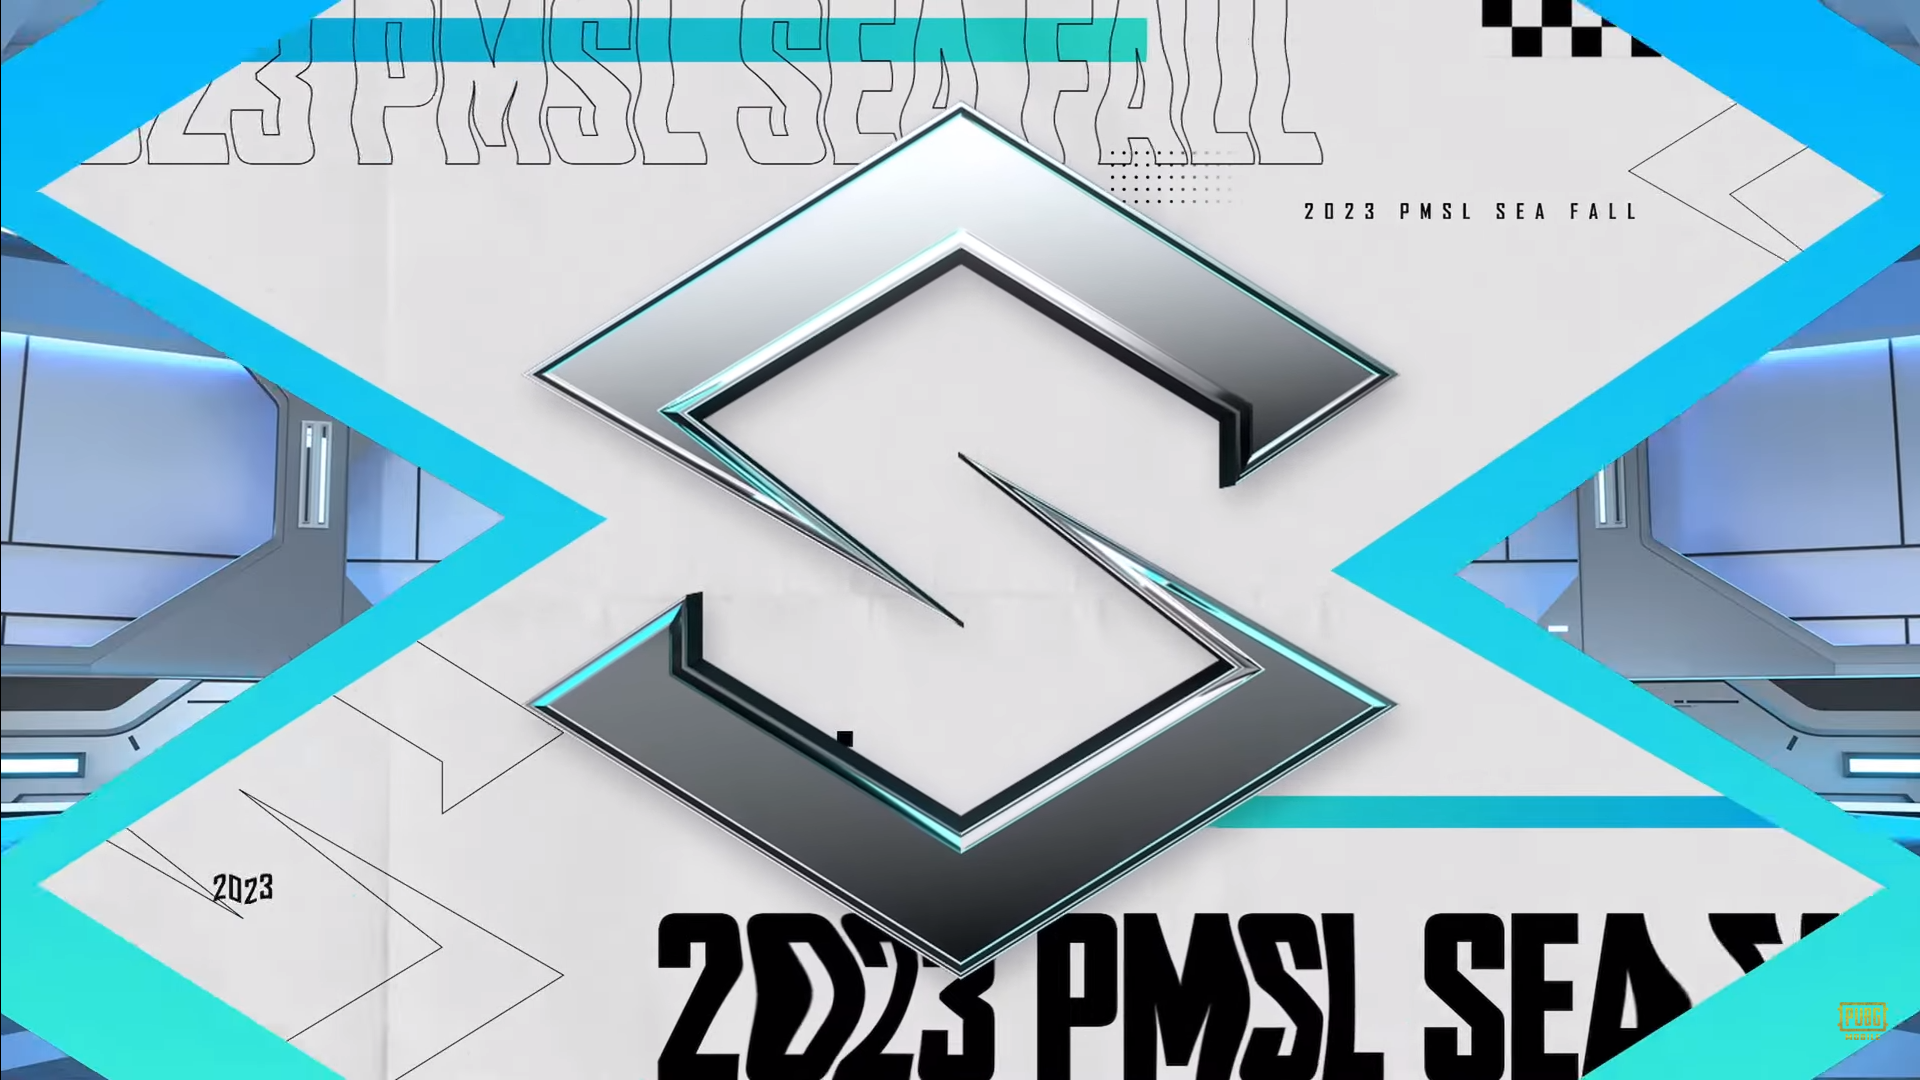 Format dan Jadwal Pertandingan Pubg Mobile Super League (PMSL) SEA Fall 2023!